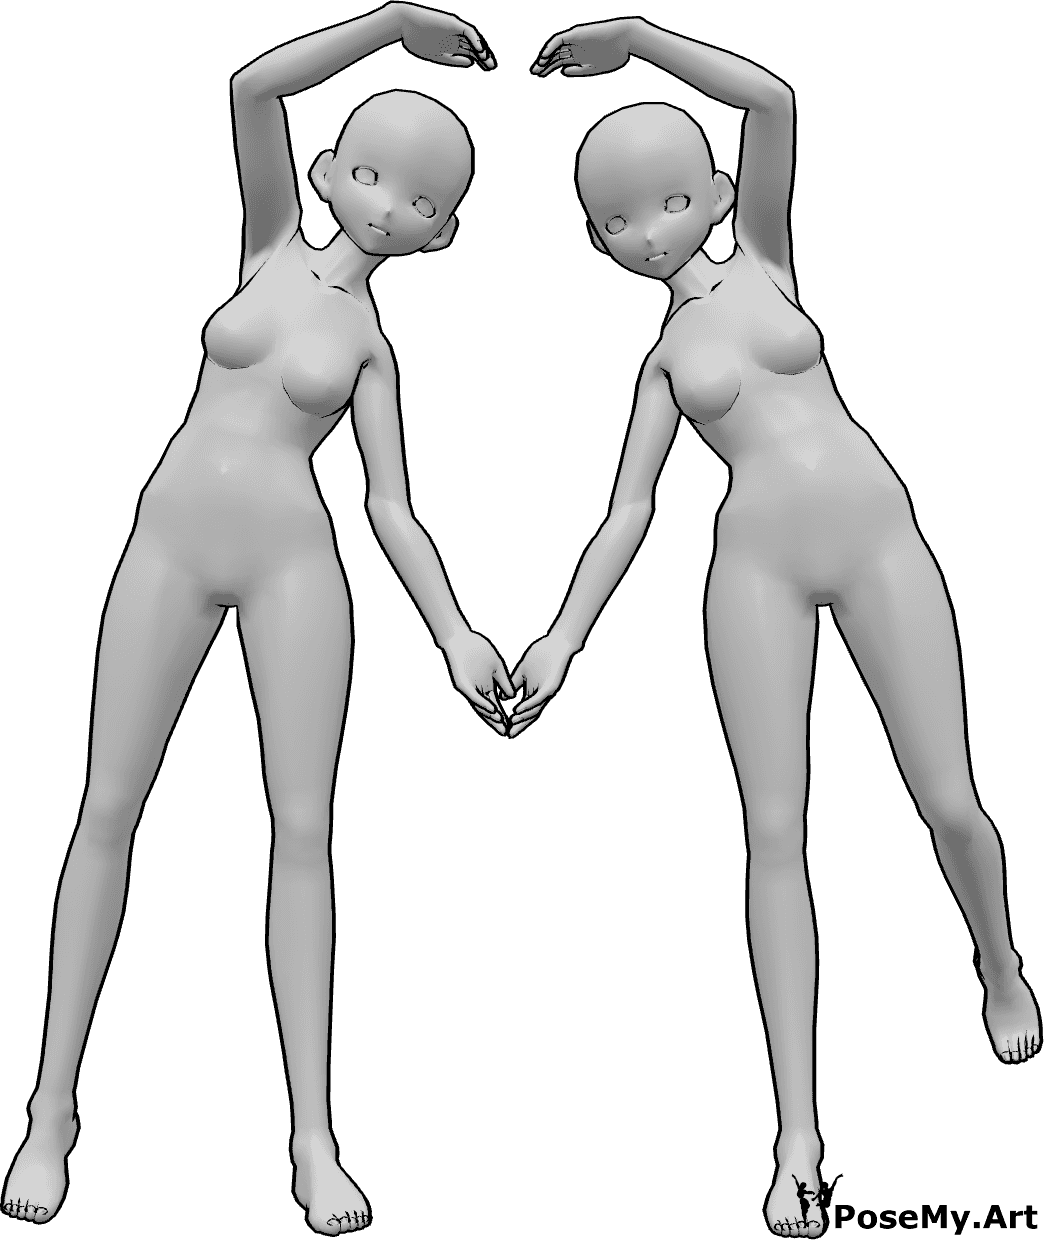 Référence des poses- Pose du cœur de l'anime - Deux femmes animées font un cœur avec leurs bras.